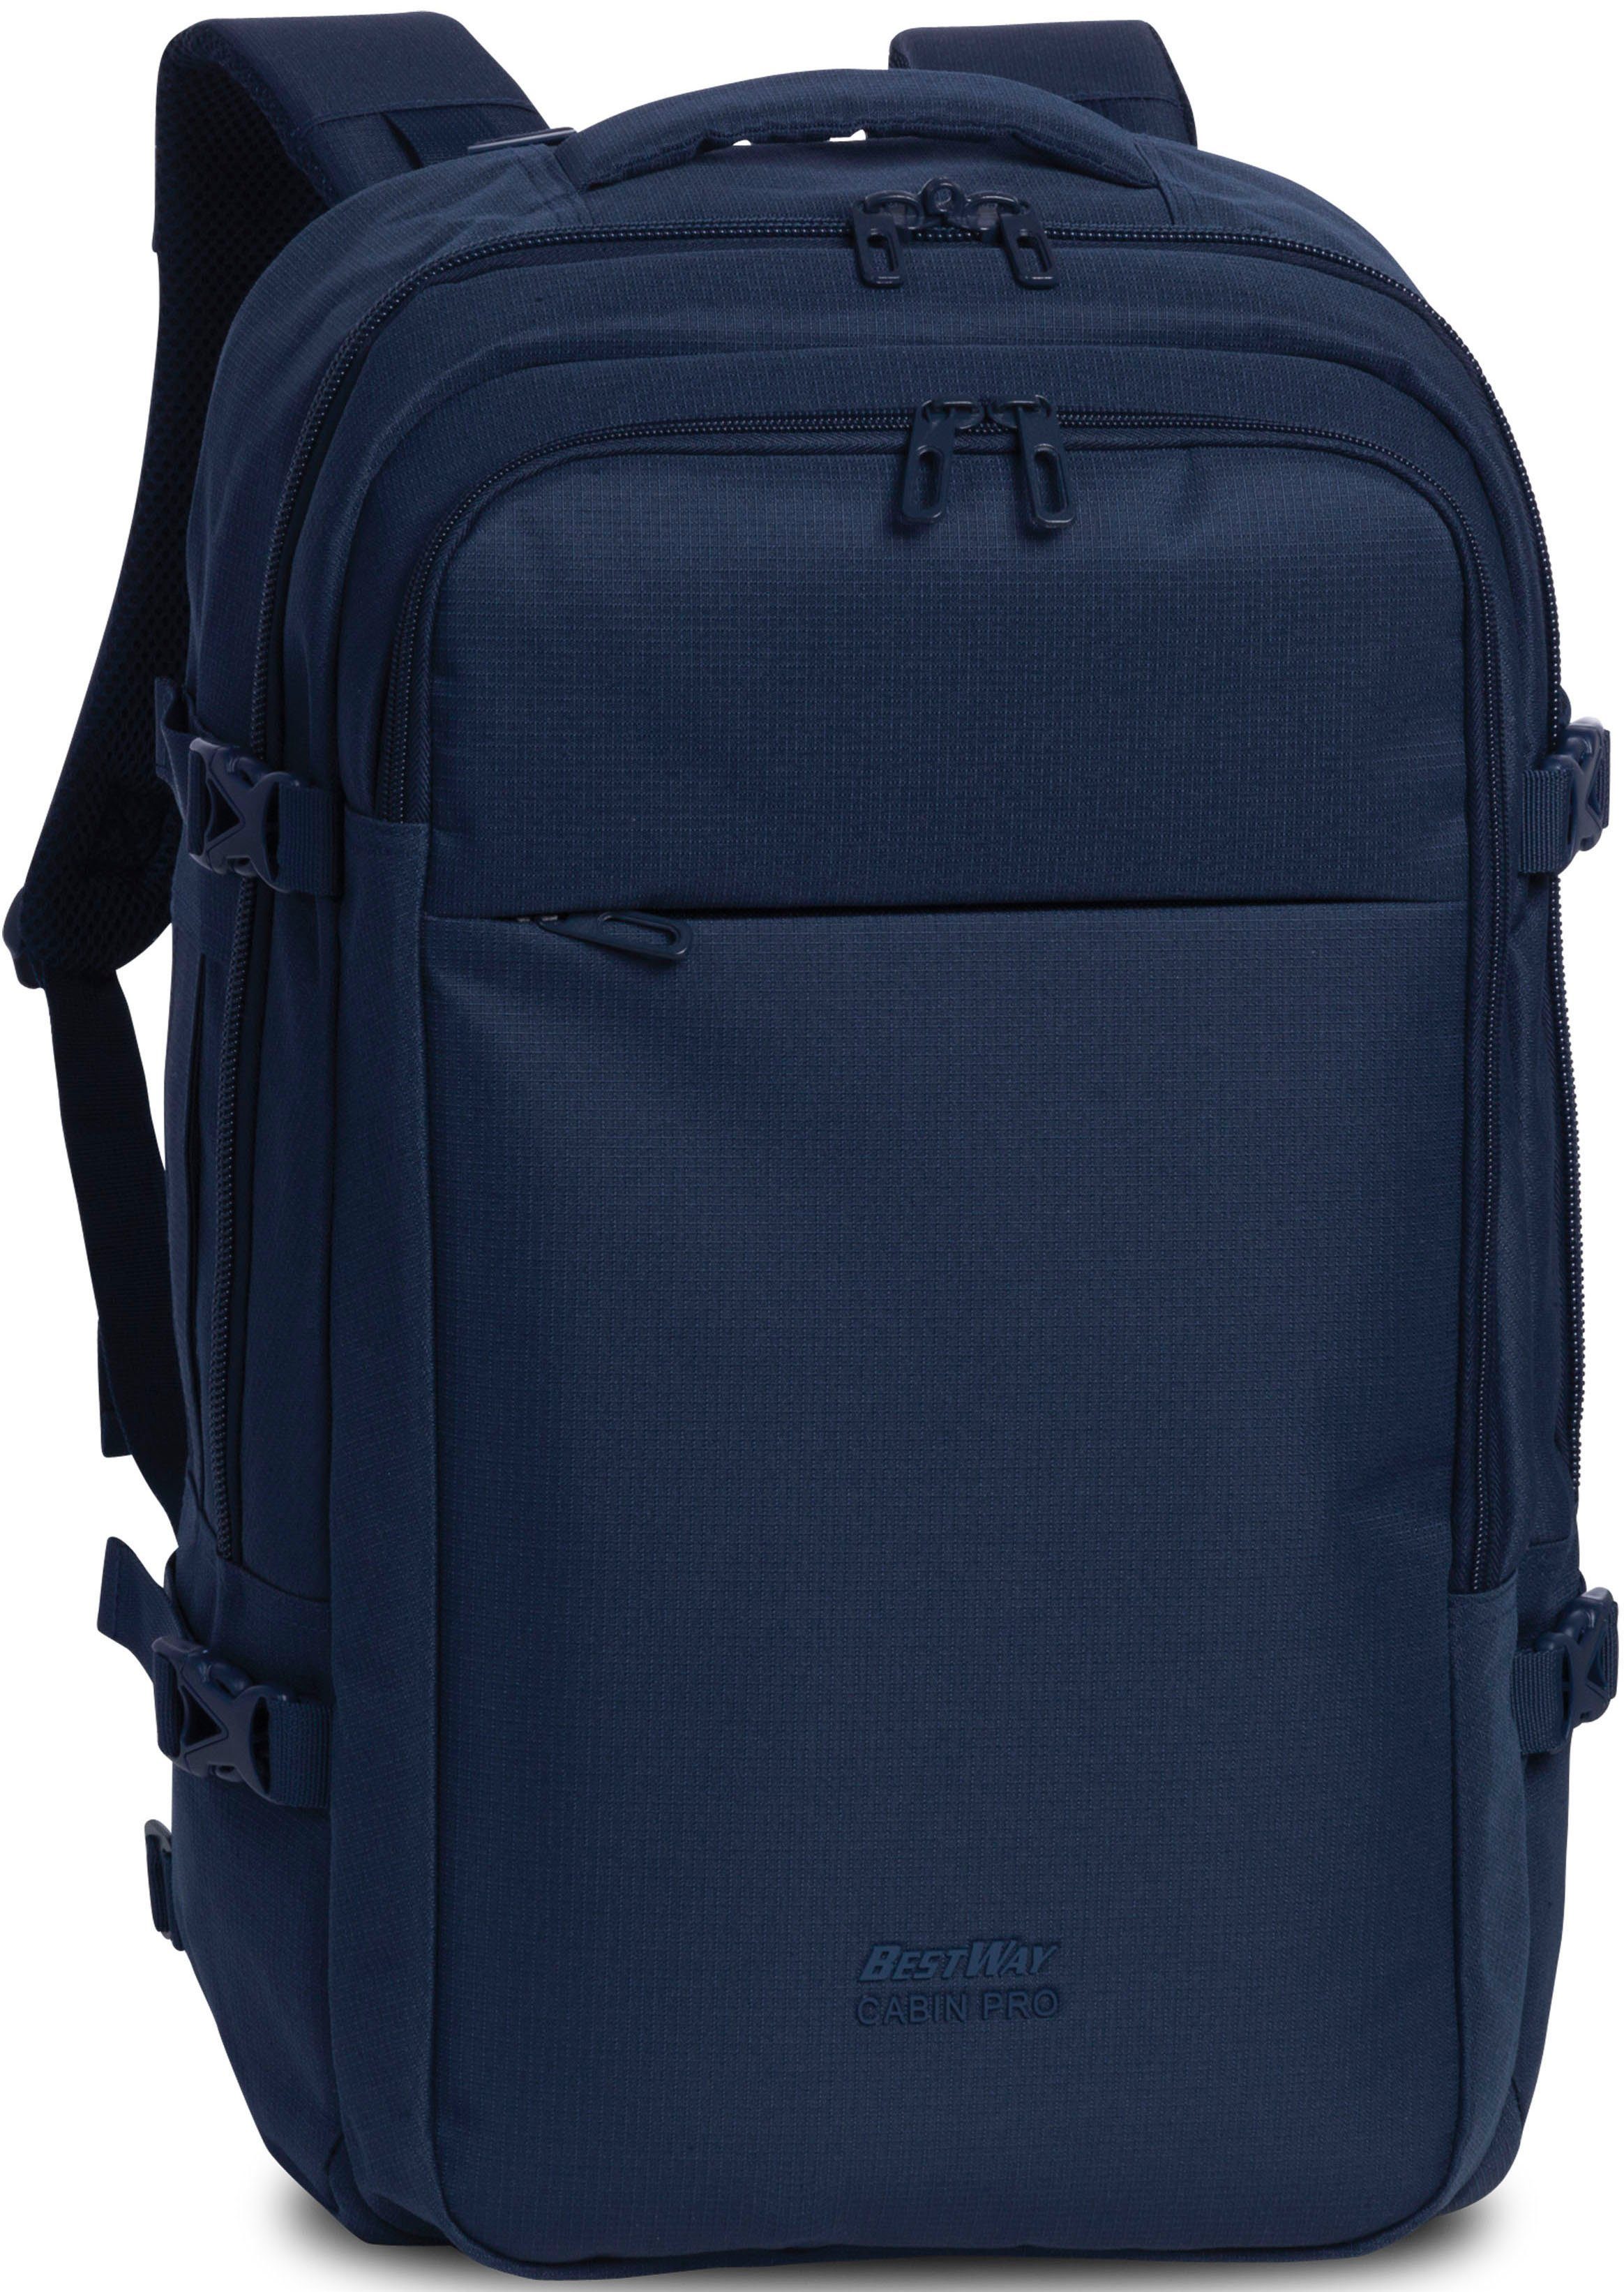 WORLDPACK BESTWAY Reiserucksack Cabin Pro, 30 l, blau, mit Laptopfach dunkelblau